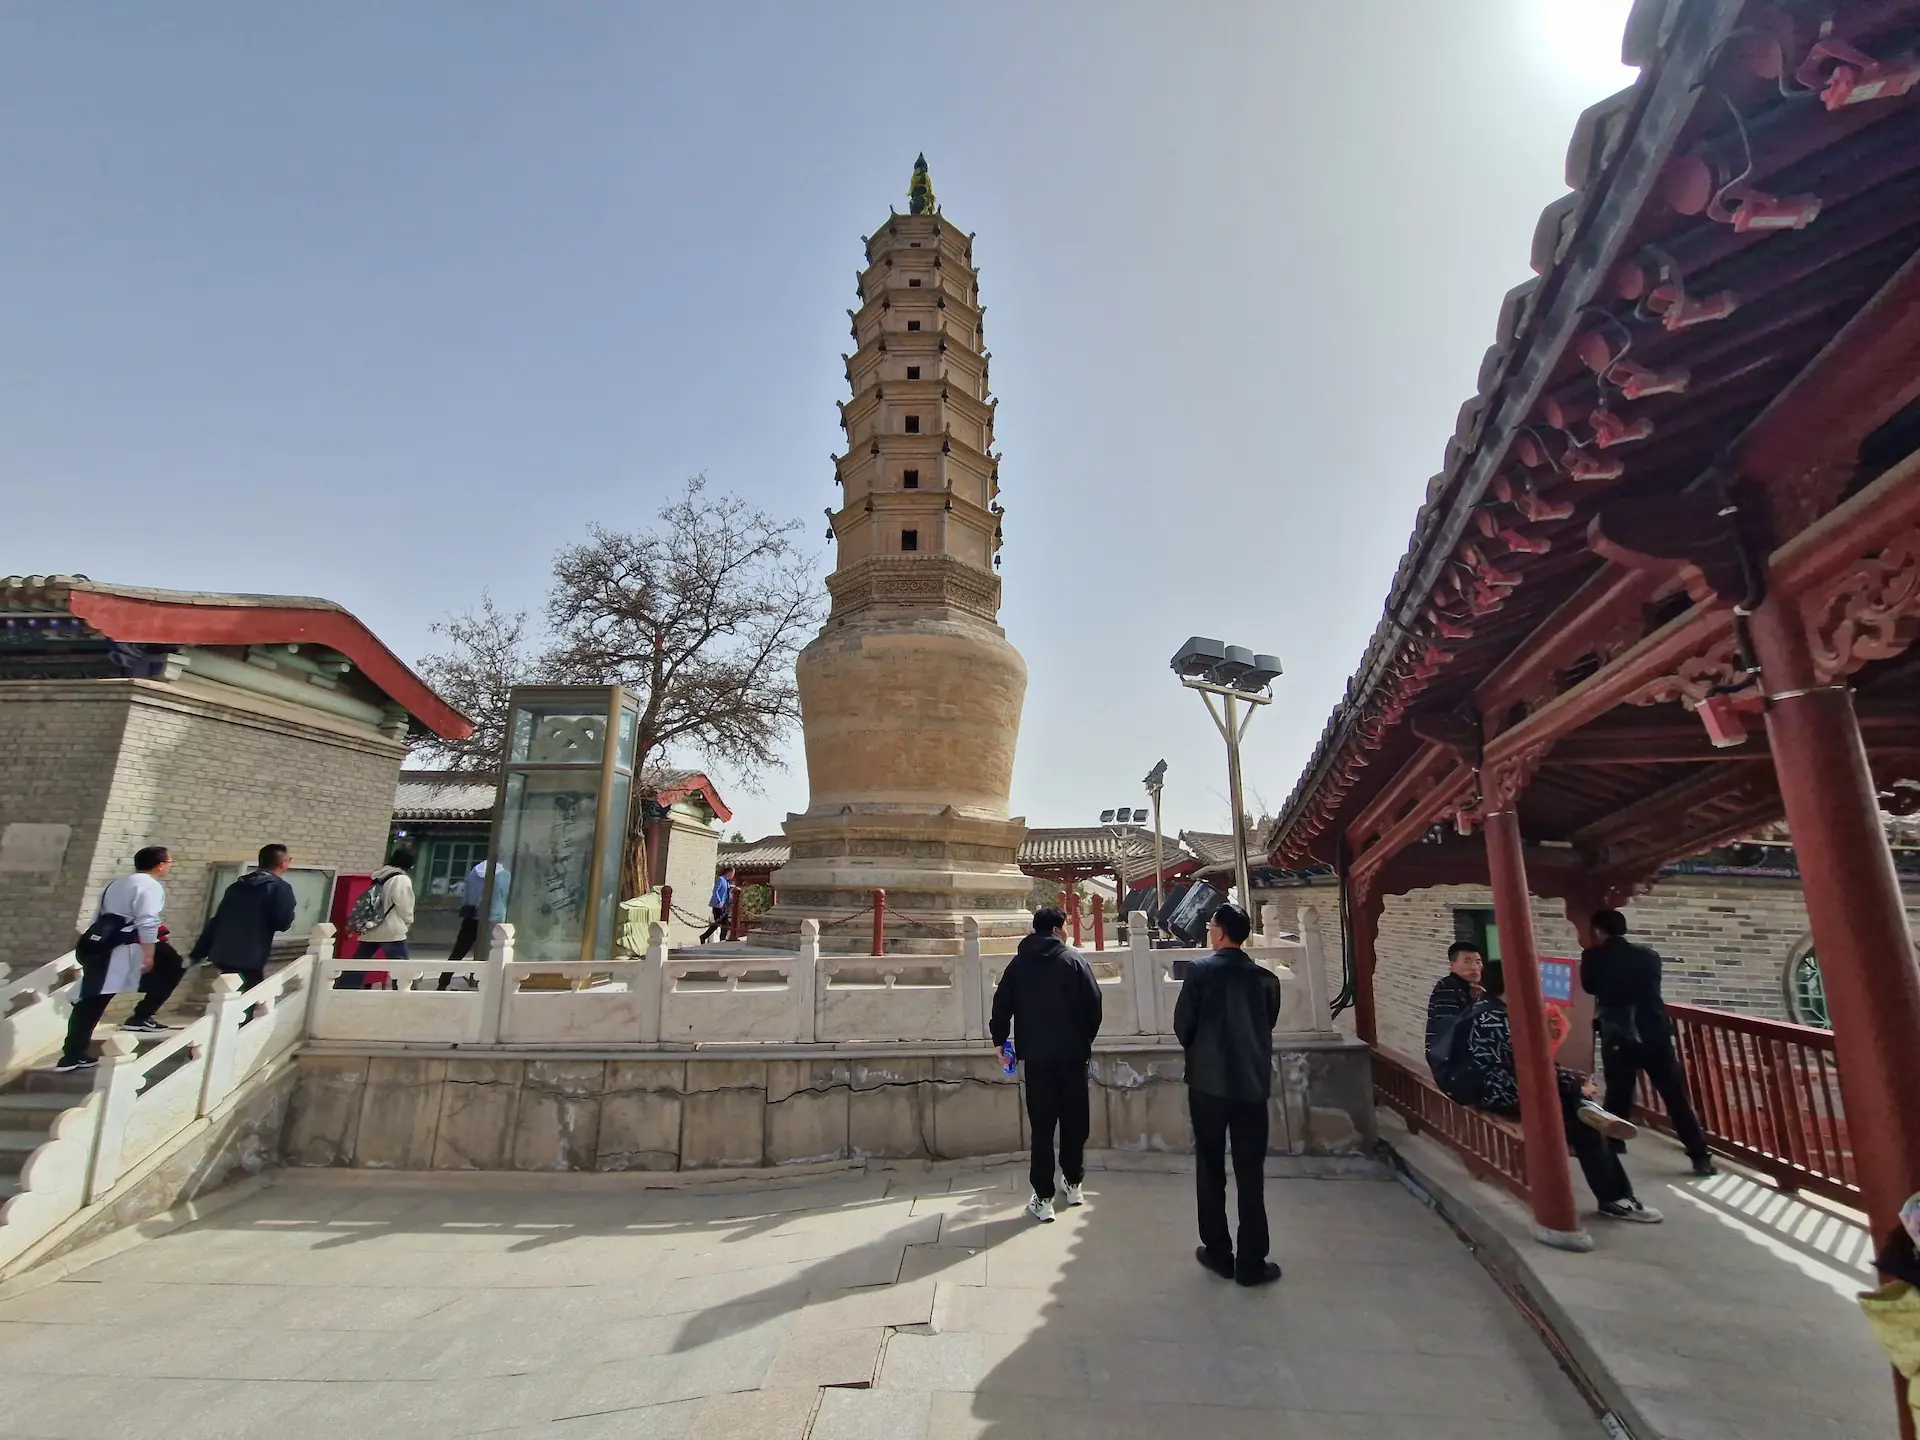 Une pagode de briques et quelques personnes qui prennent des photos